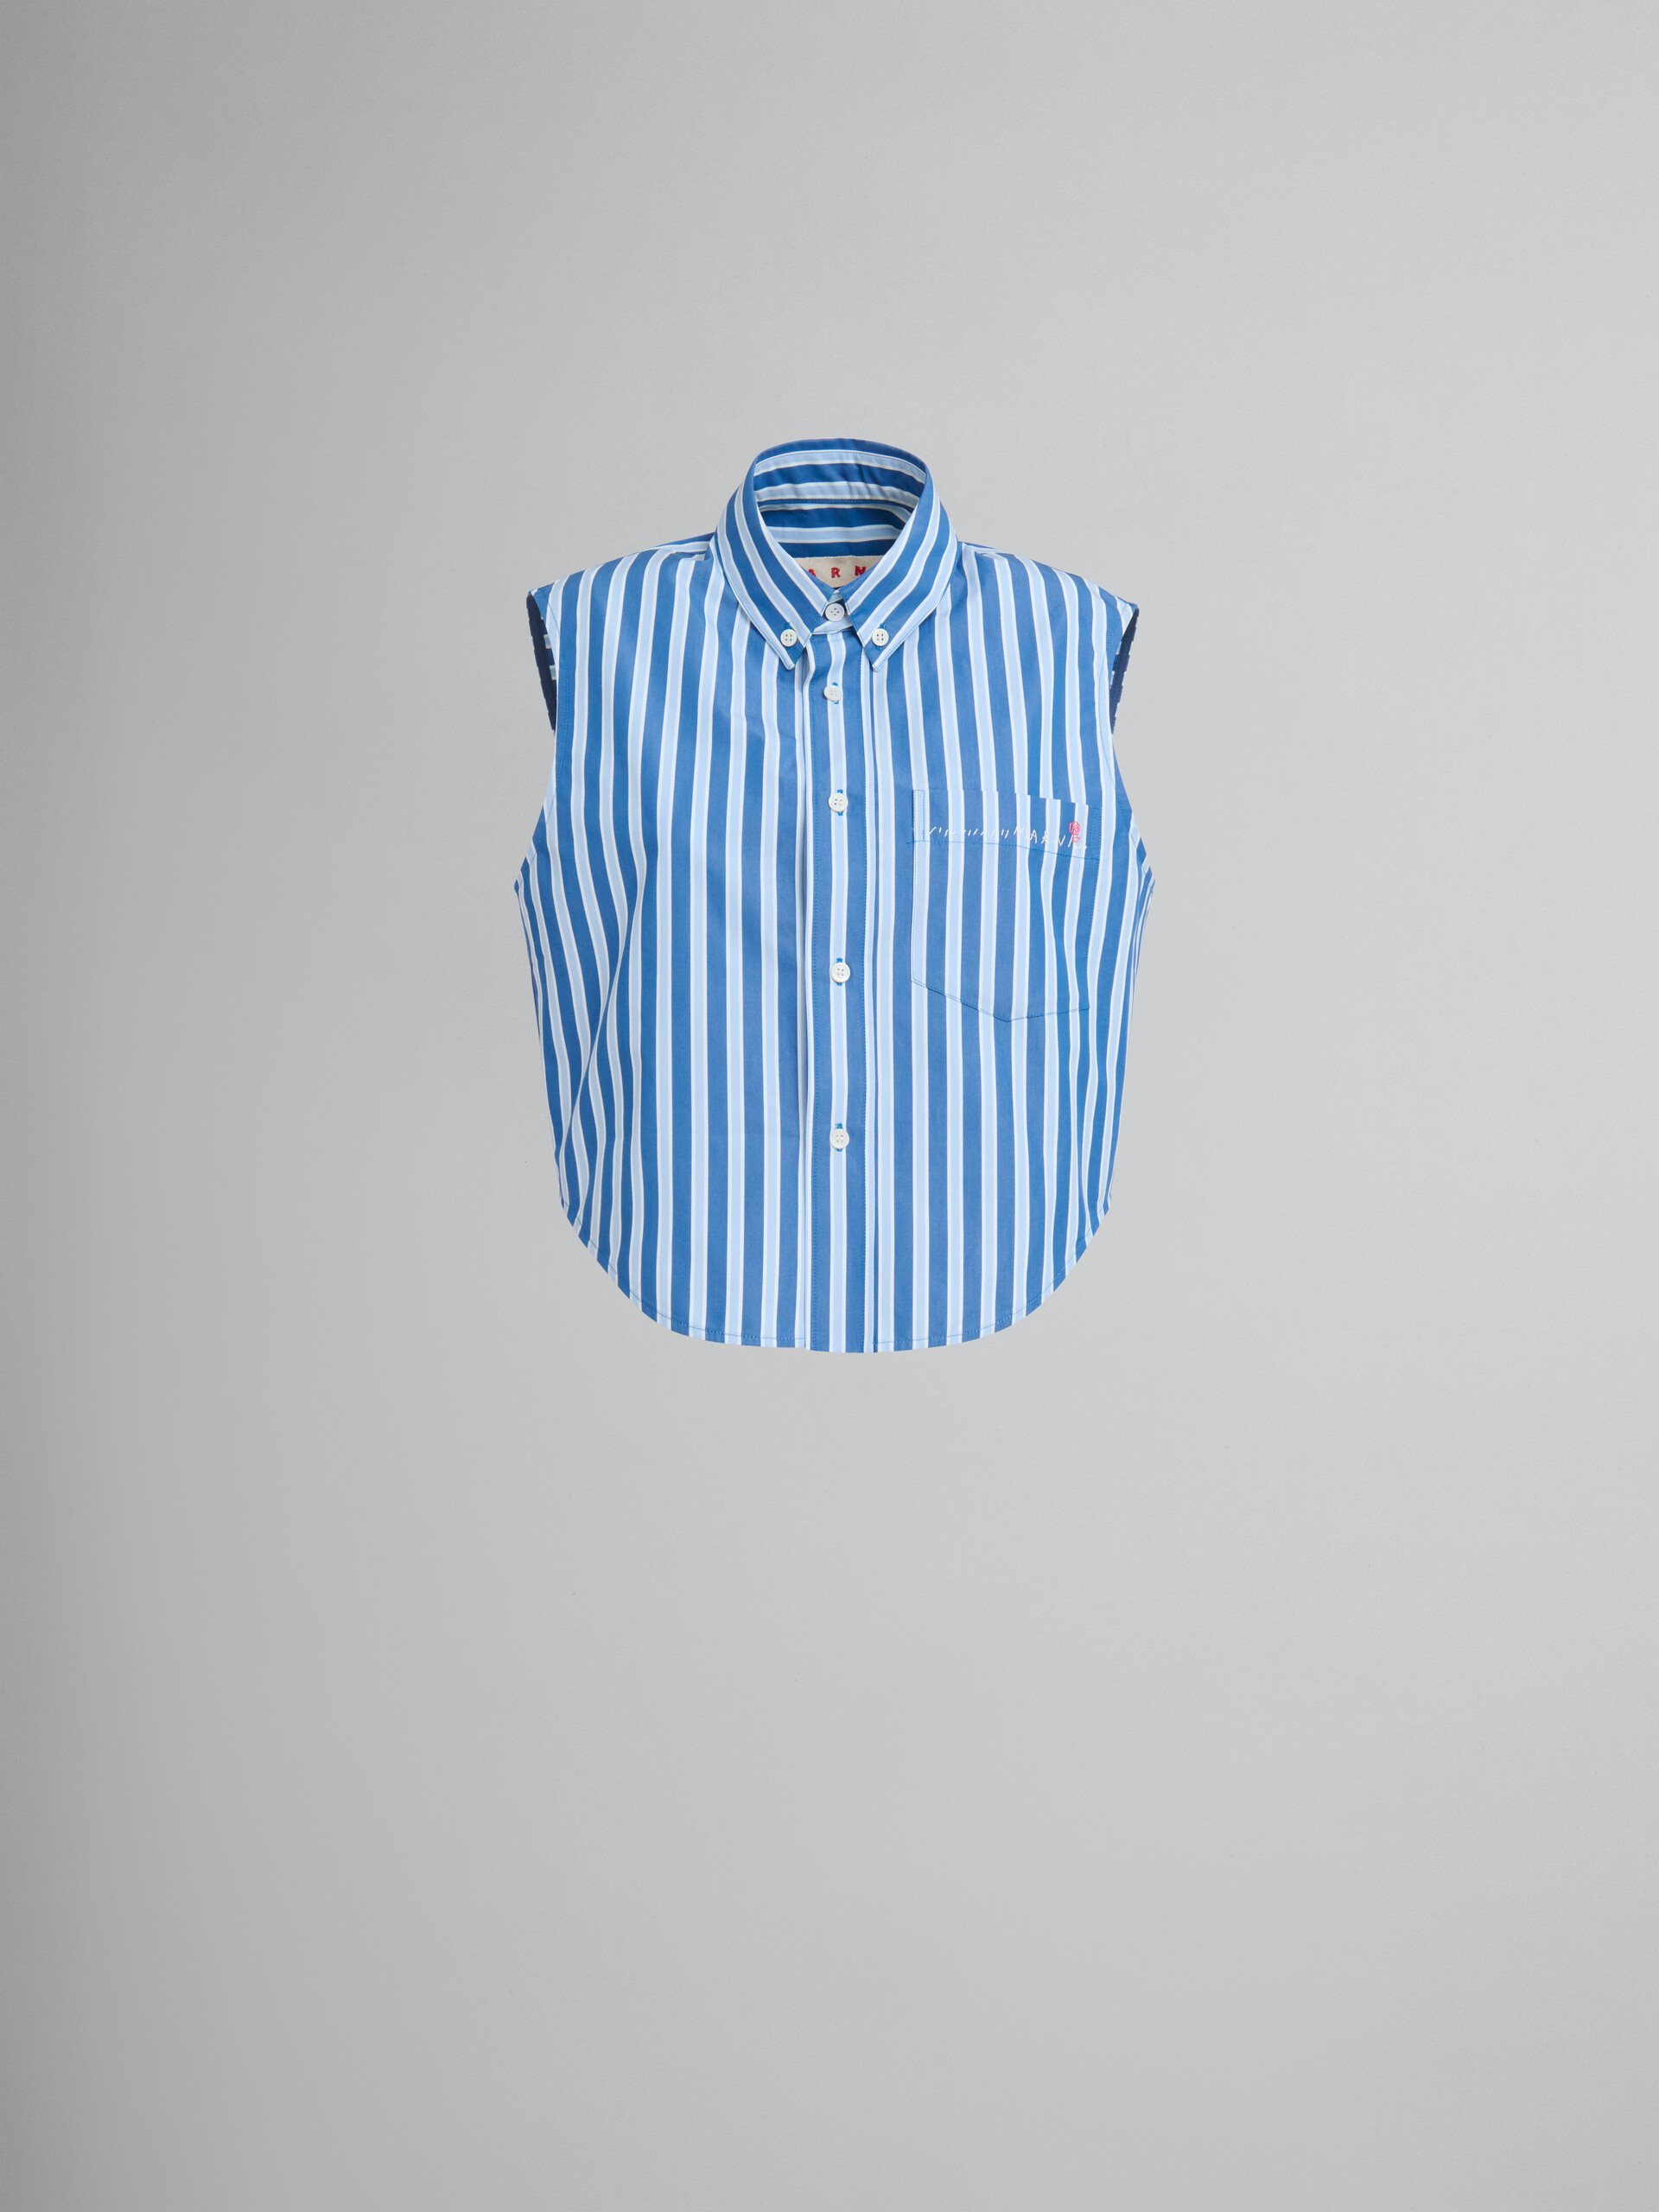 Blau-weiß gestreiftes, ärmelloses Hemd aus Bio-Popeline - Hemden - Image 1